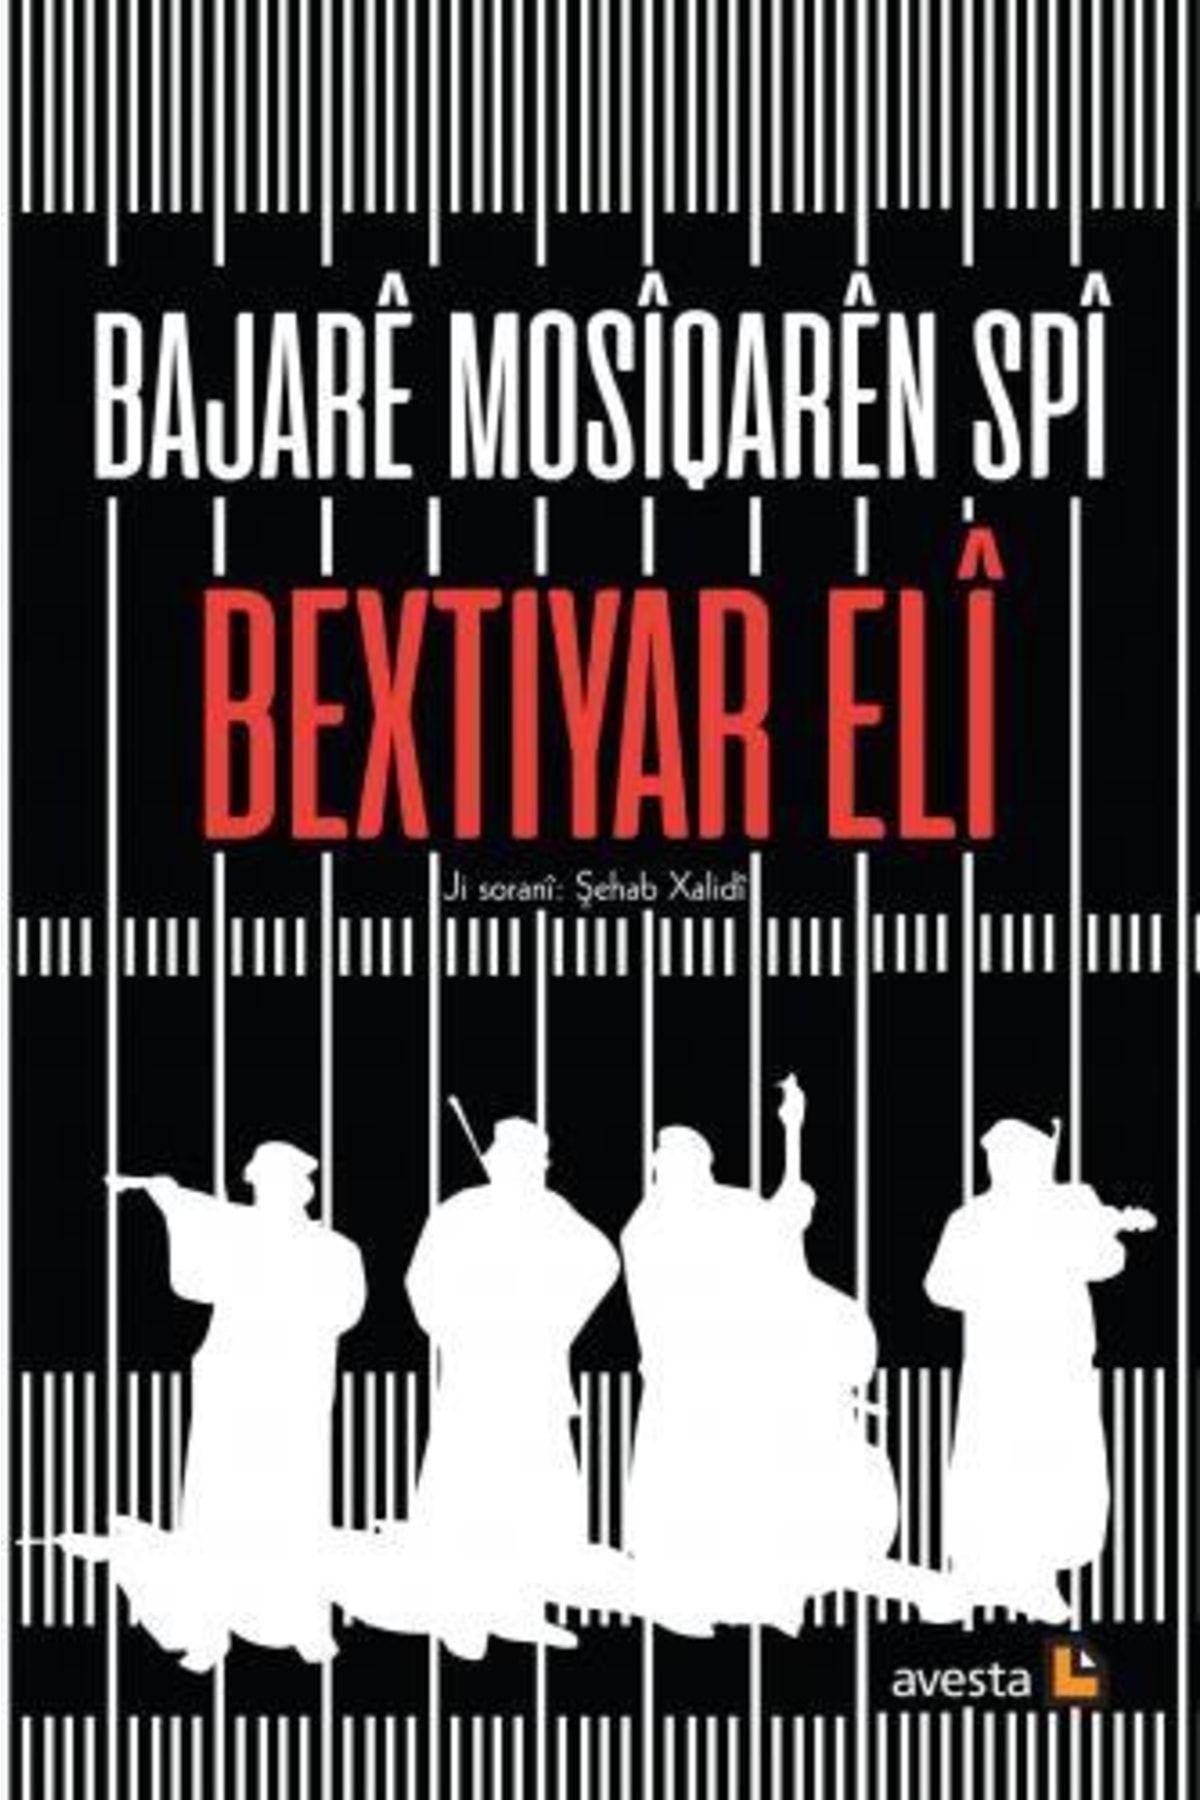 Avesta Yayınları Bajare Mosiqaren Spi / Bextiyar Eli / / 9786257253871